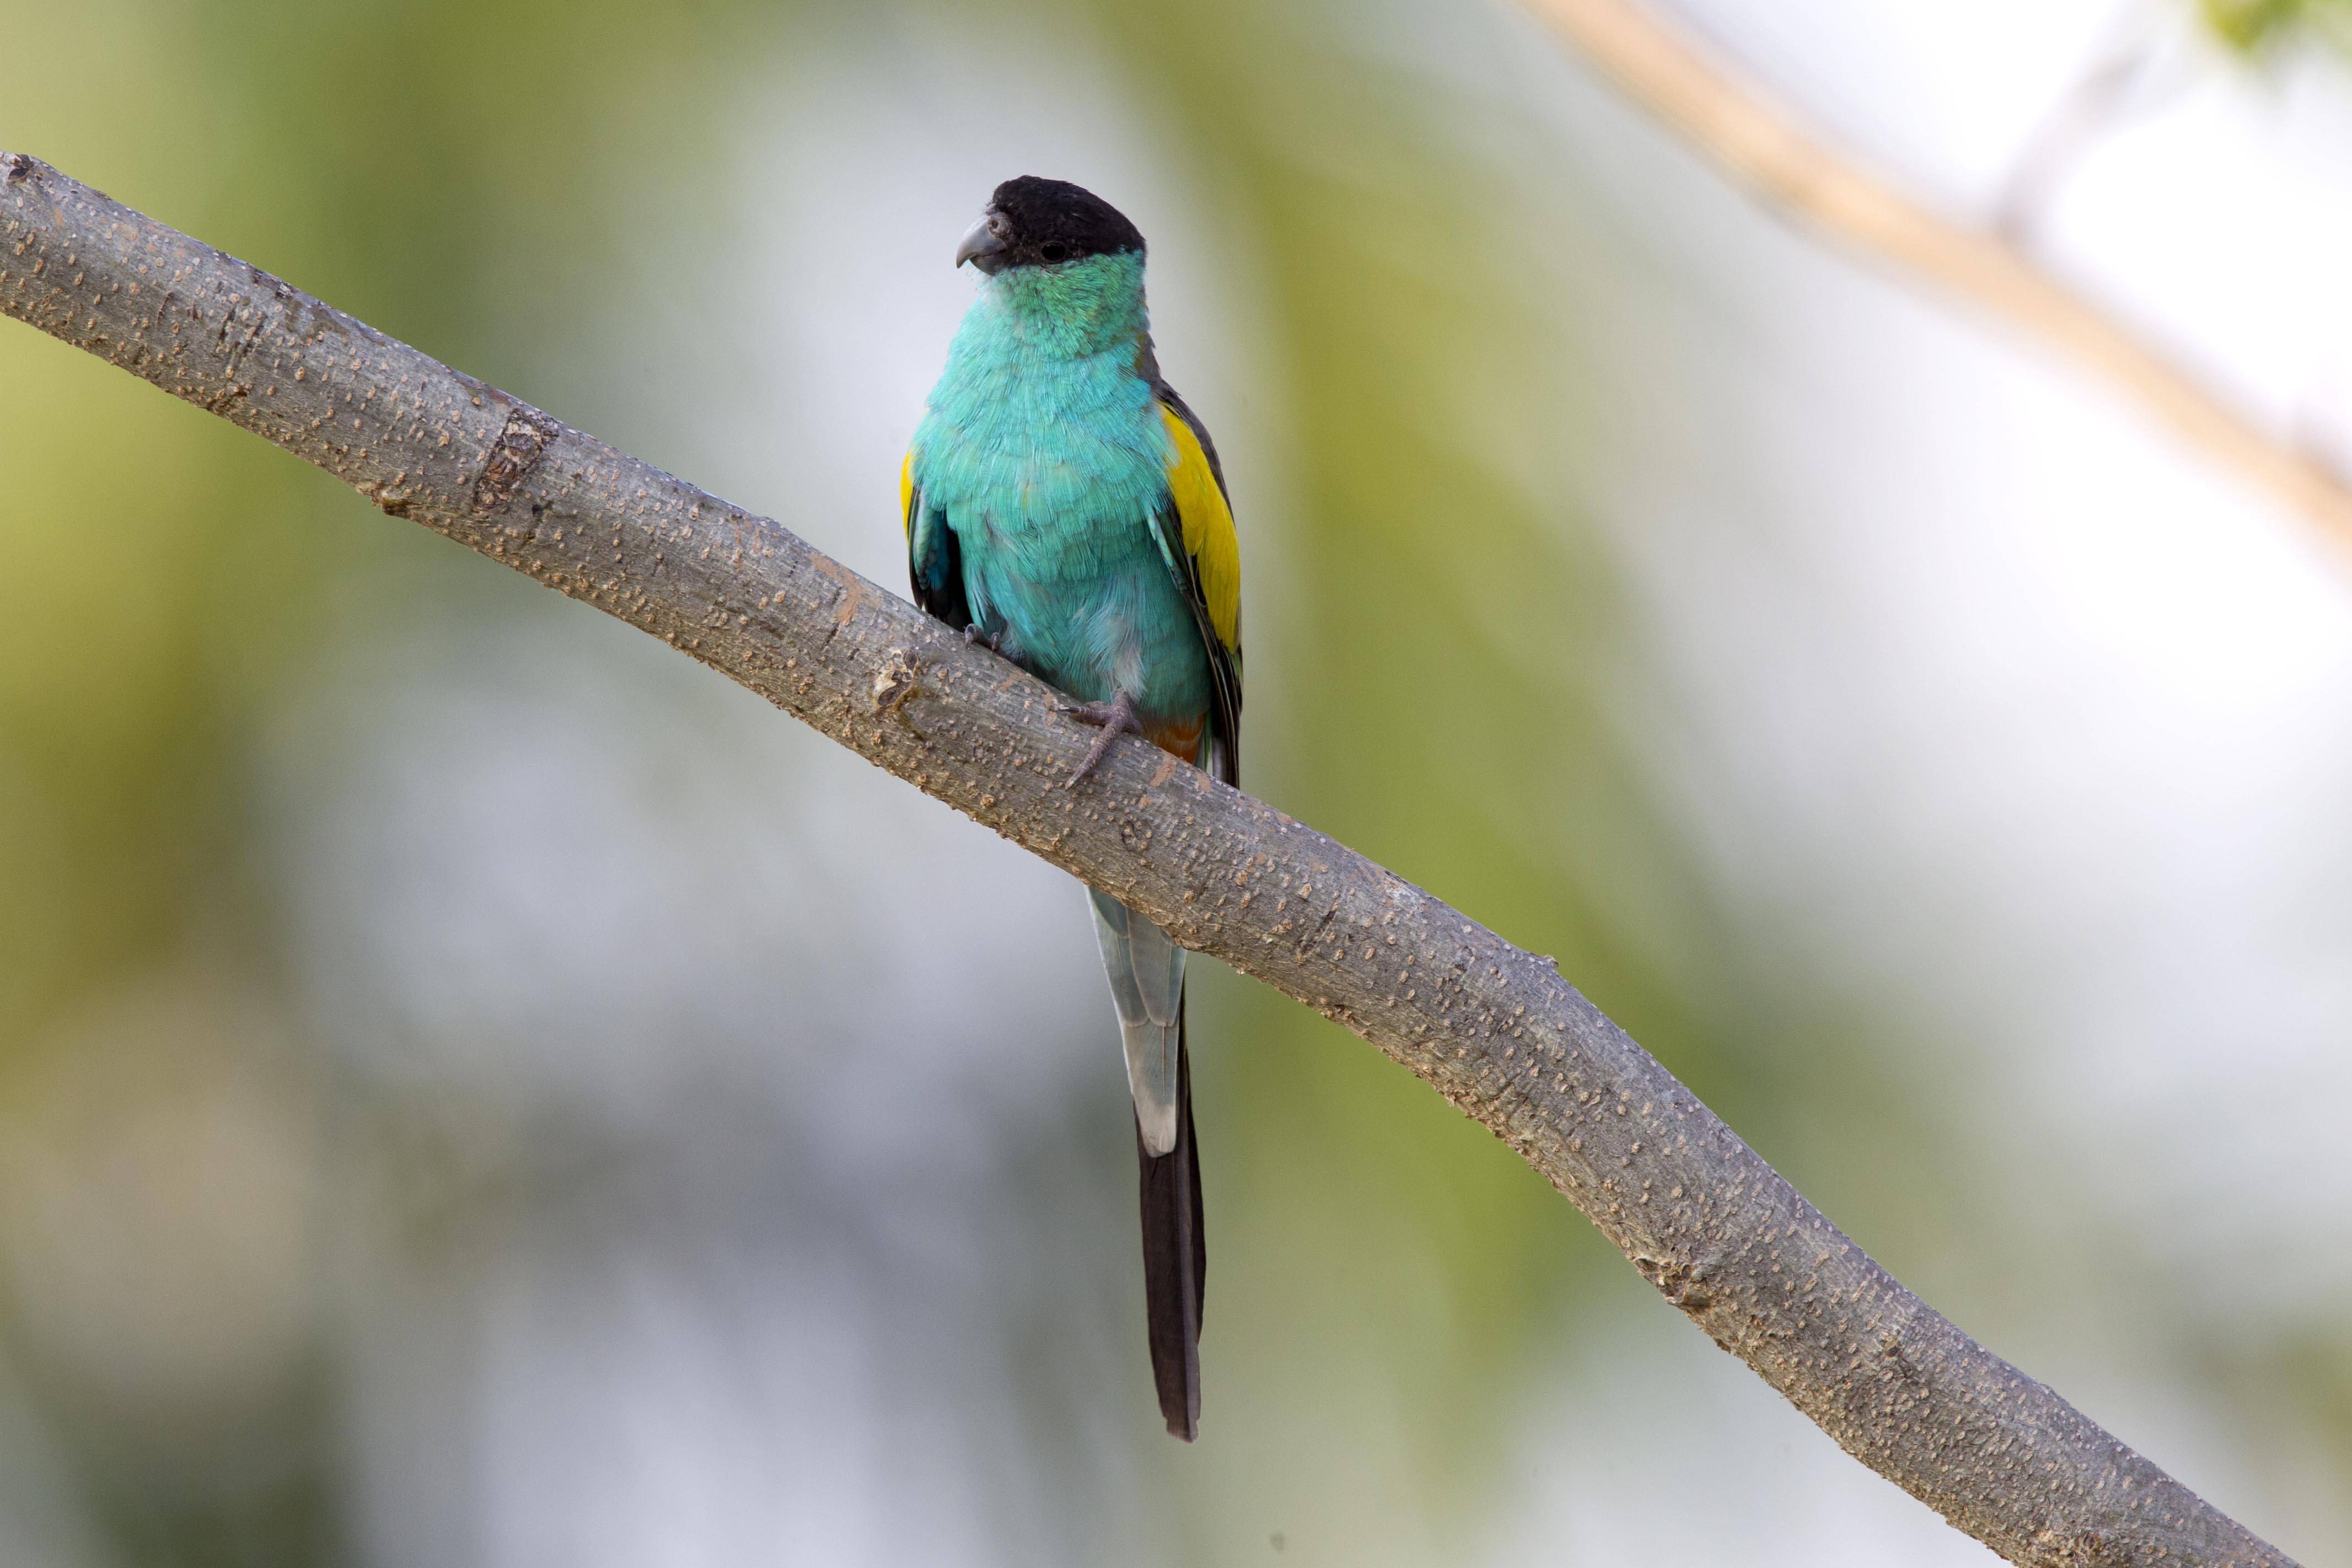 Певчий попугай : фото, видео, содержание и размножение